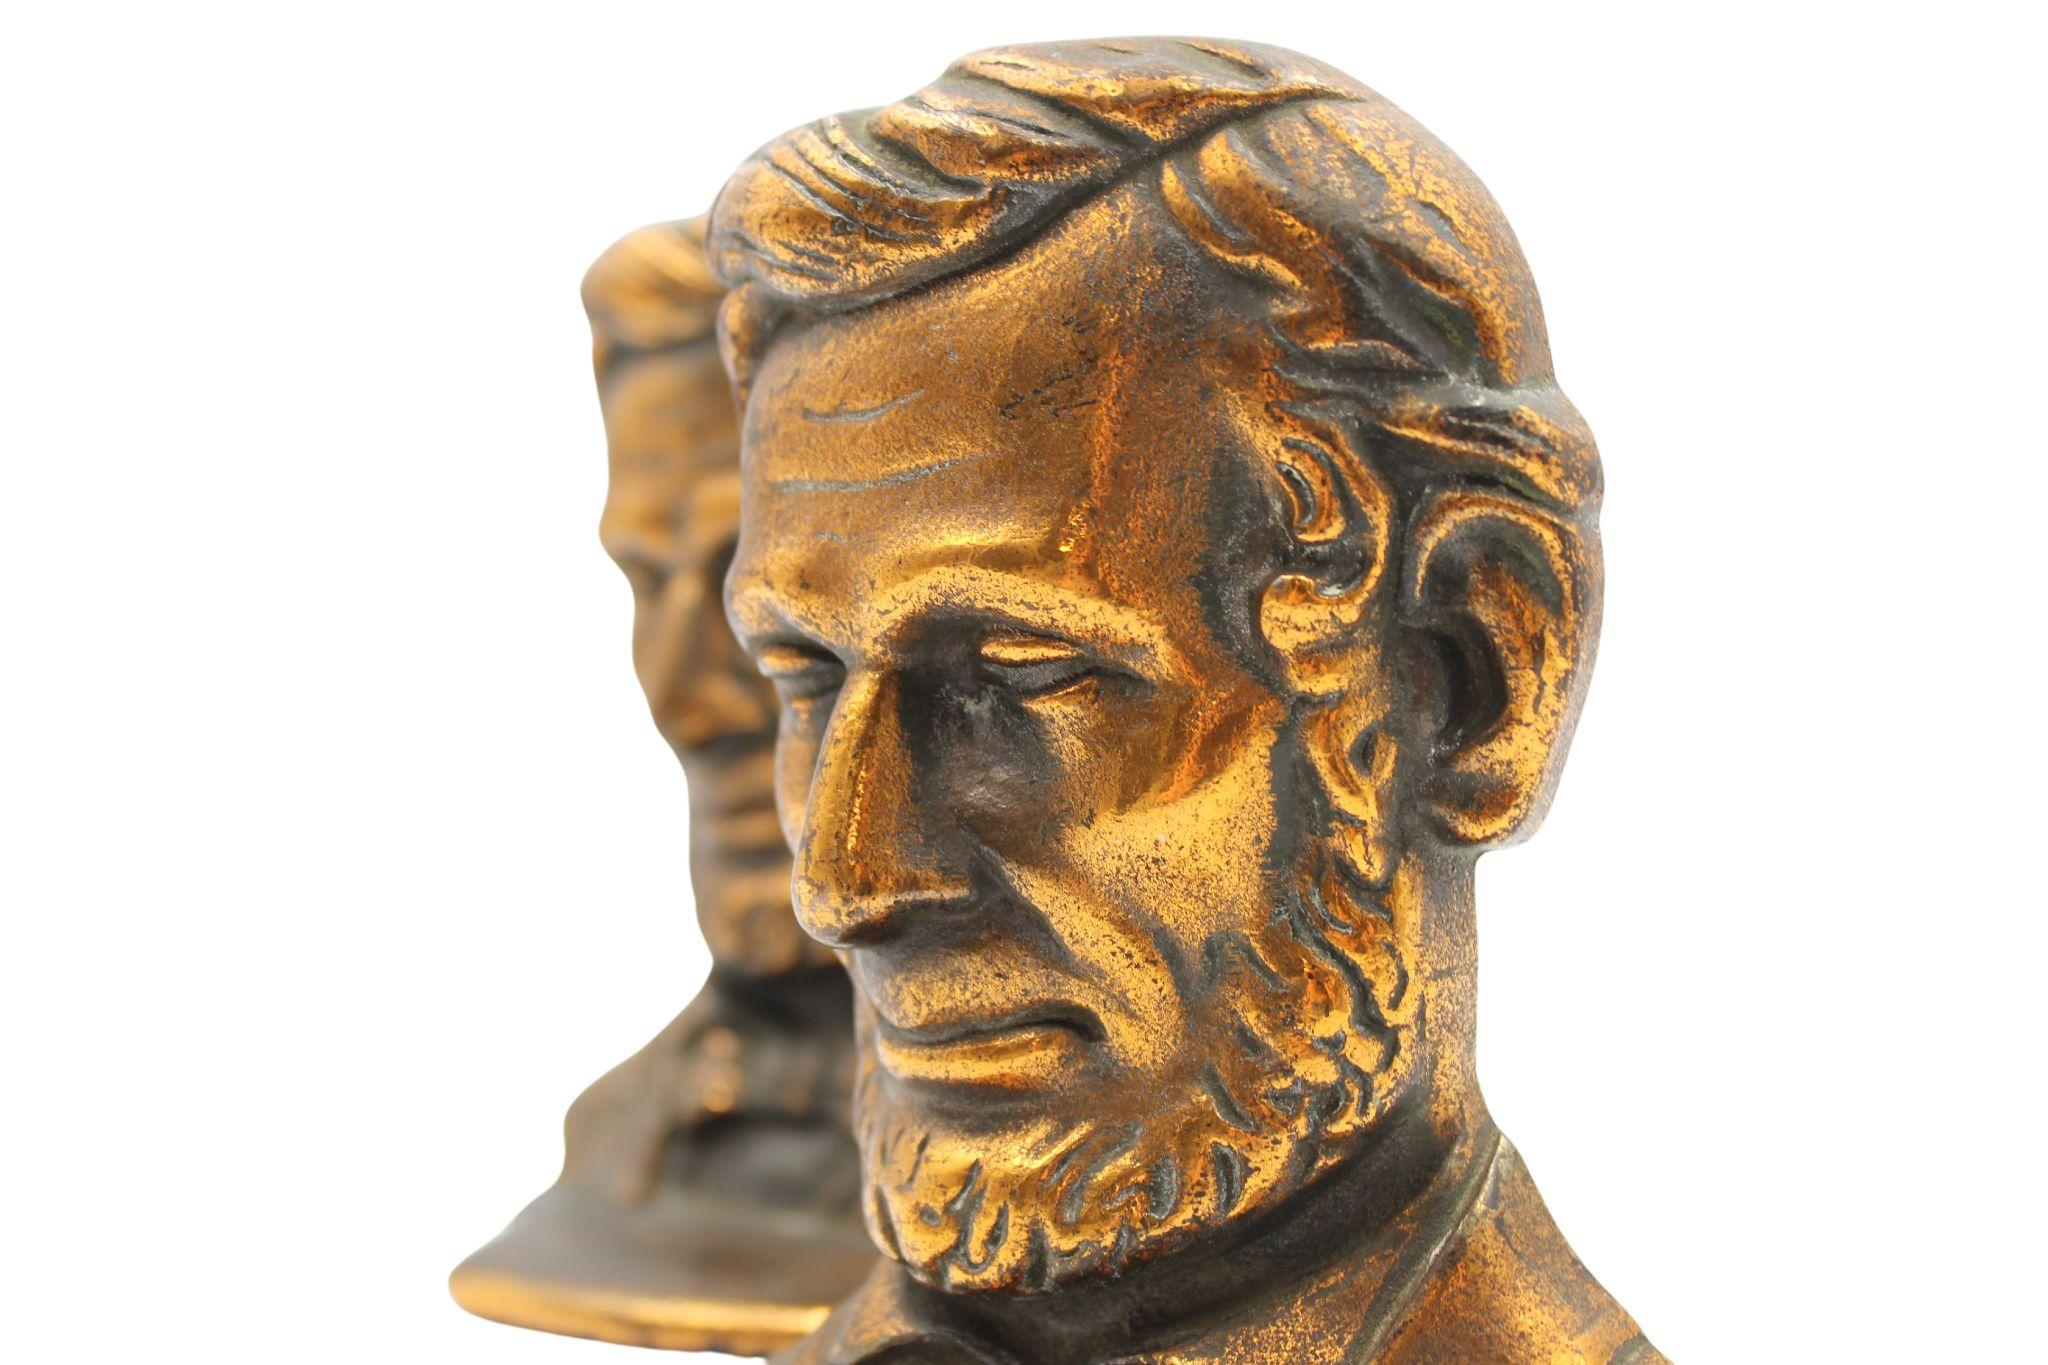 Angeboten wird ein Paar von Vintage Abraham Lincoln Büste Buchstützen. Das Paar zeigt das Abbild von Abraham Lincoln mit detaillierten Gesichtszügen und formeller Kleidung. 

Die Lincoln-Büste ist der 1887 von Augustus Saint-Gaudens für den Lincoln